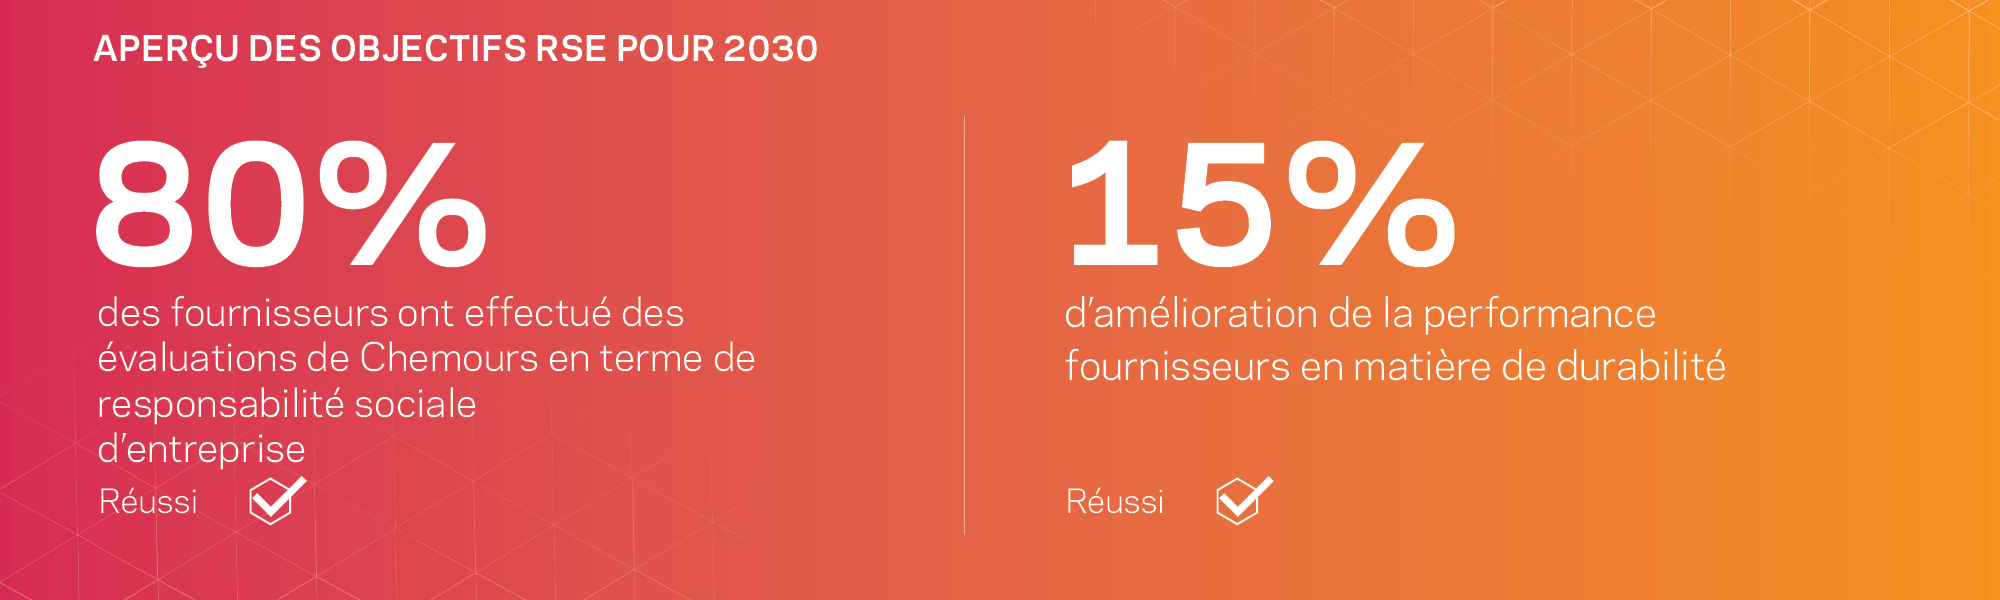 Aperçu des objectifs RSE pour 2030